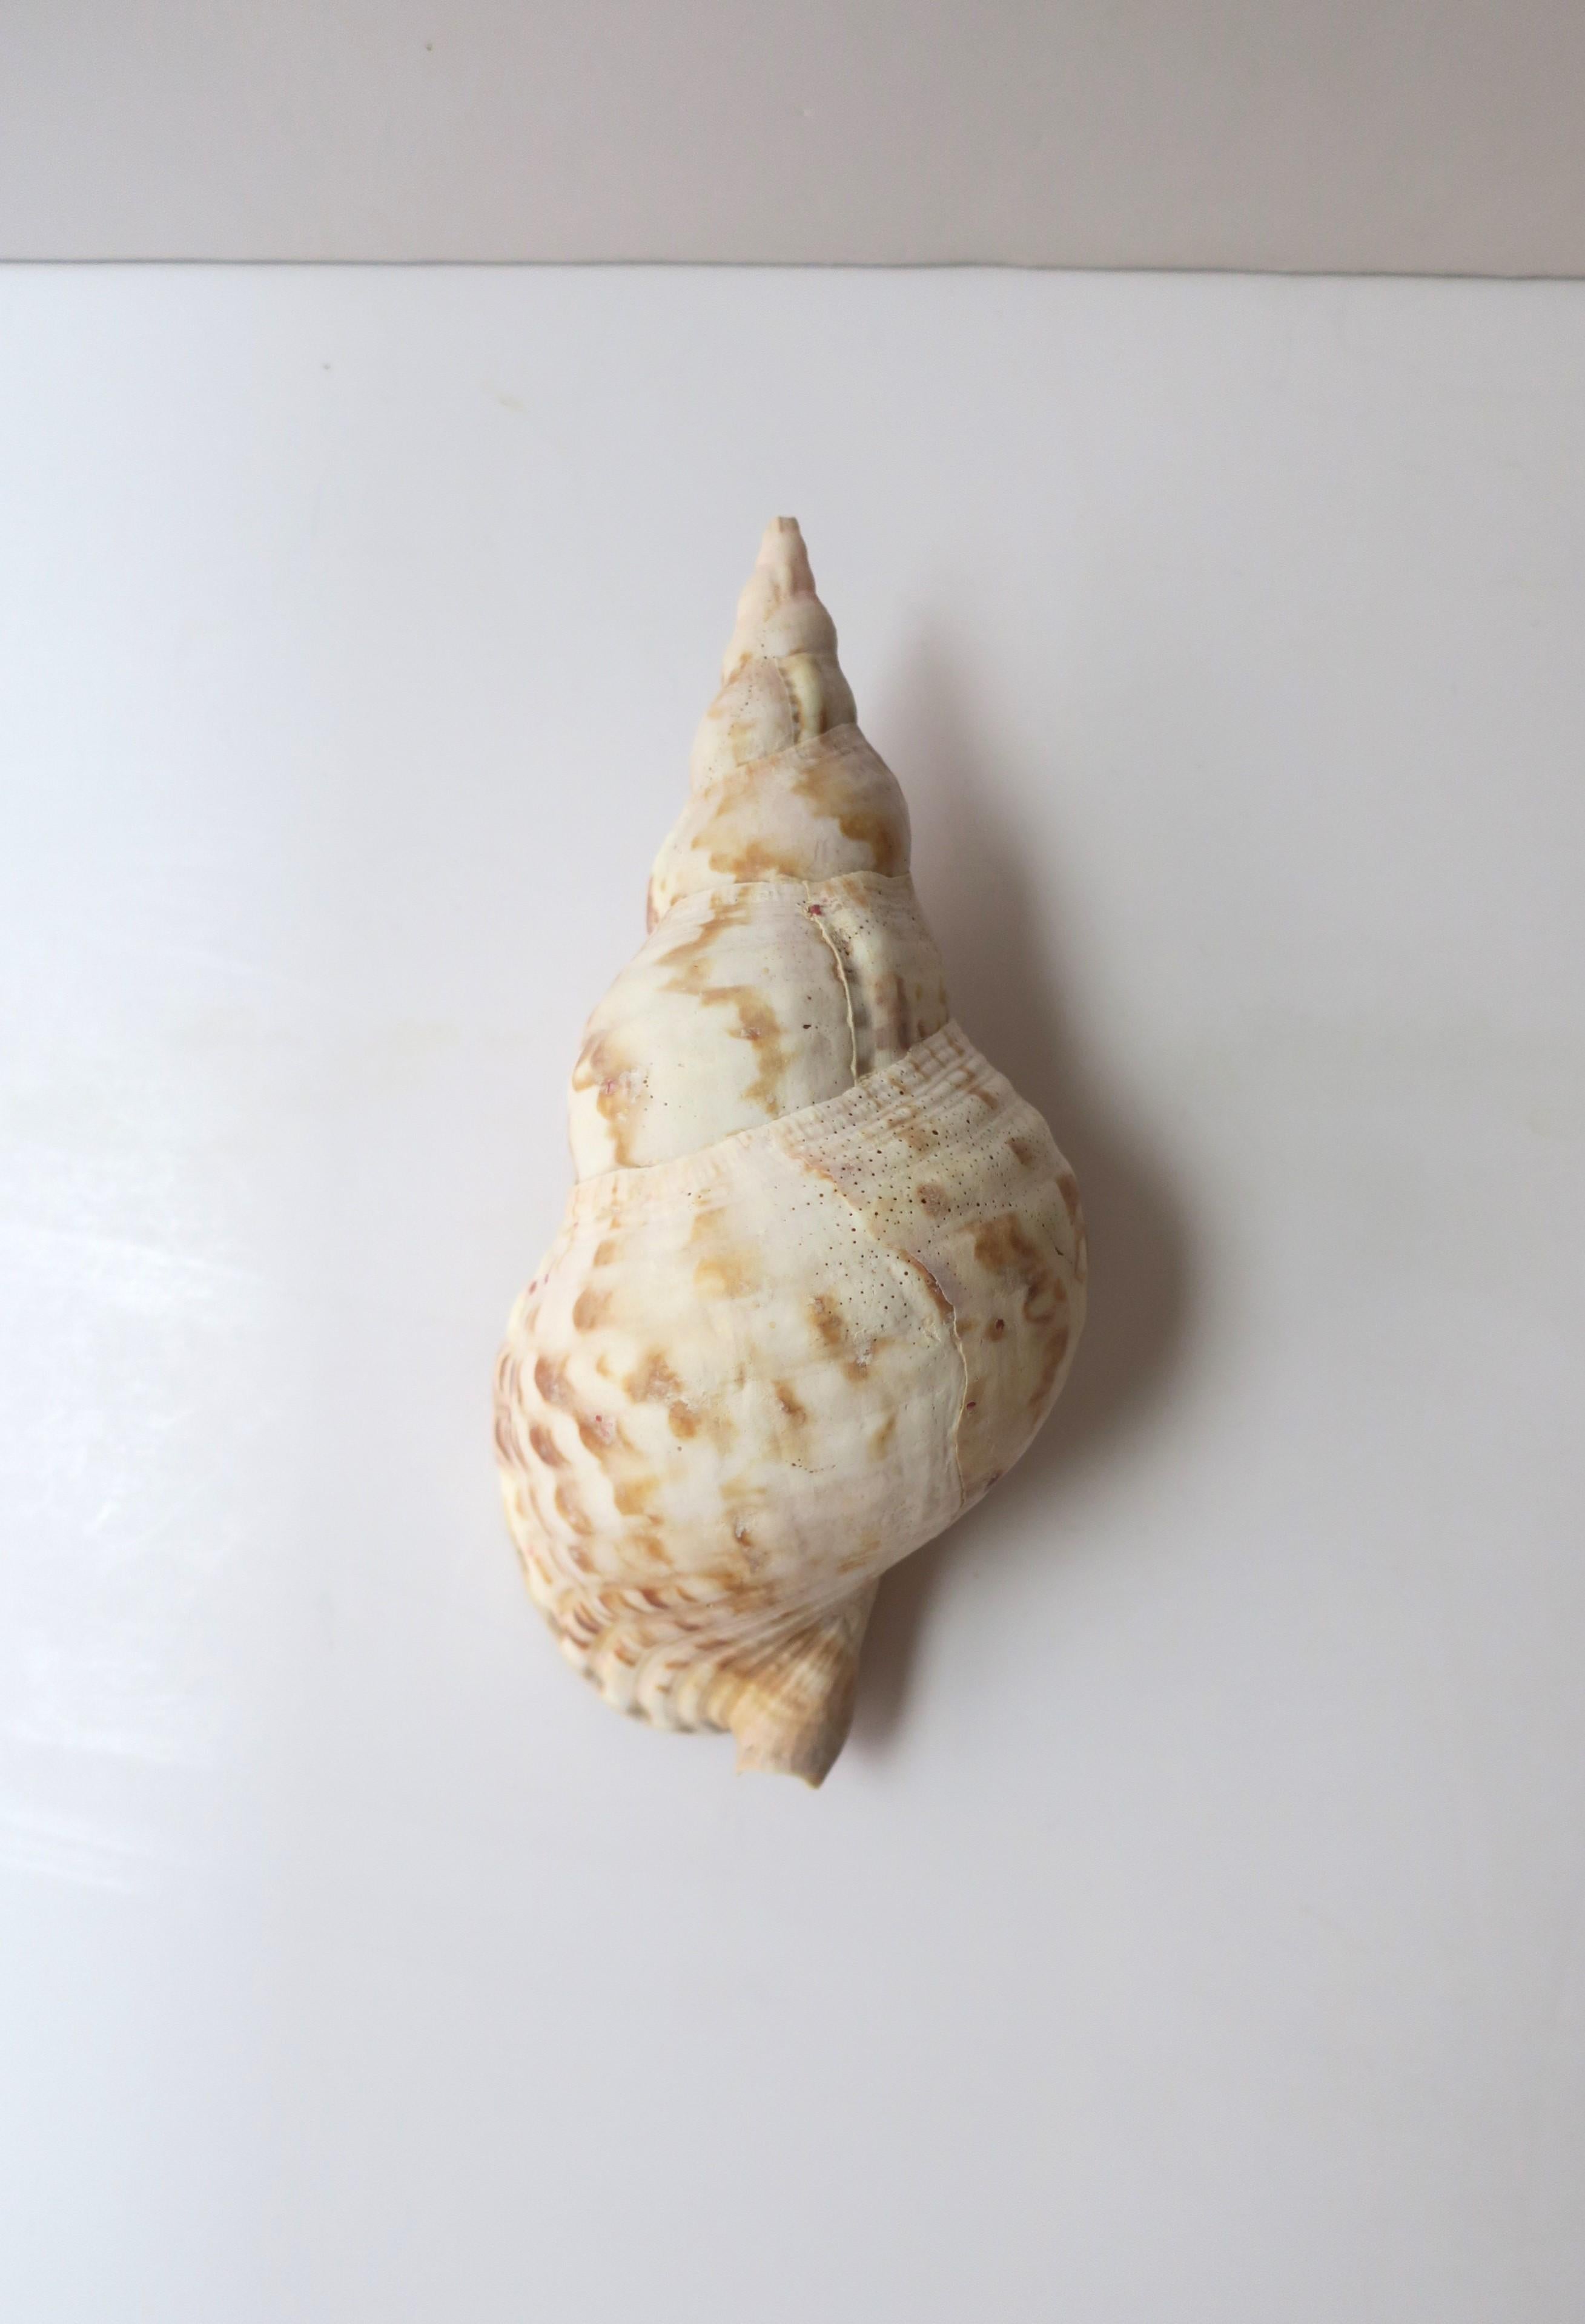 Eine schöne natürliche Muschel aus dem Meer, etwa Anfang des 20. Jahrhunderts oder früher. Bei der Muschel scheint es sich um einen so genannten 